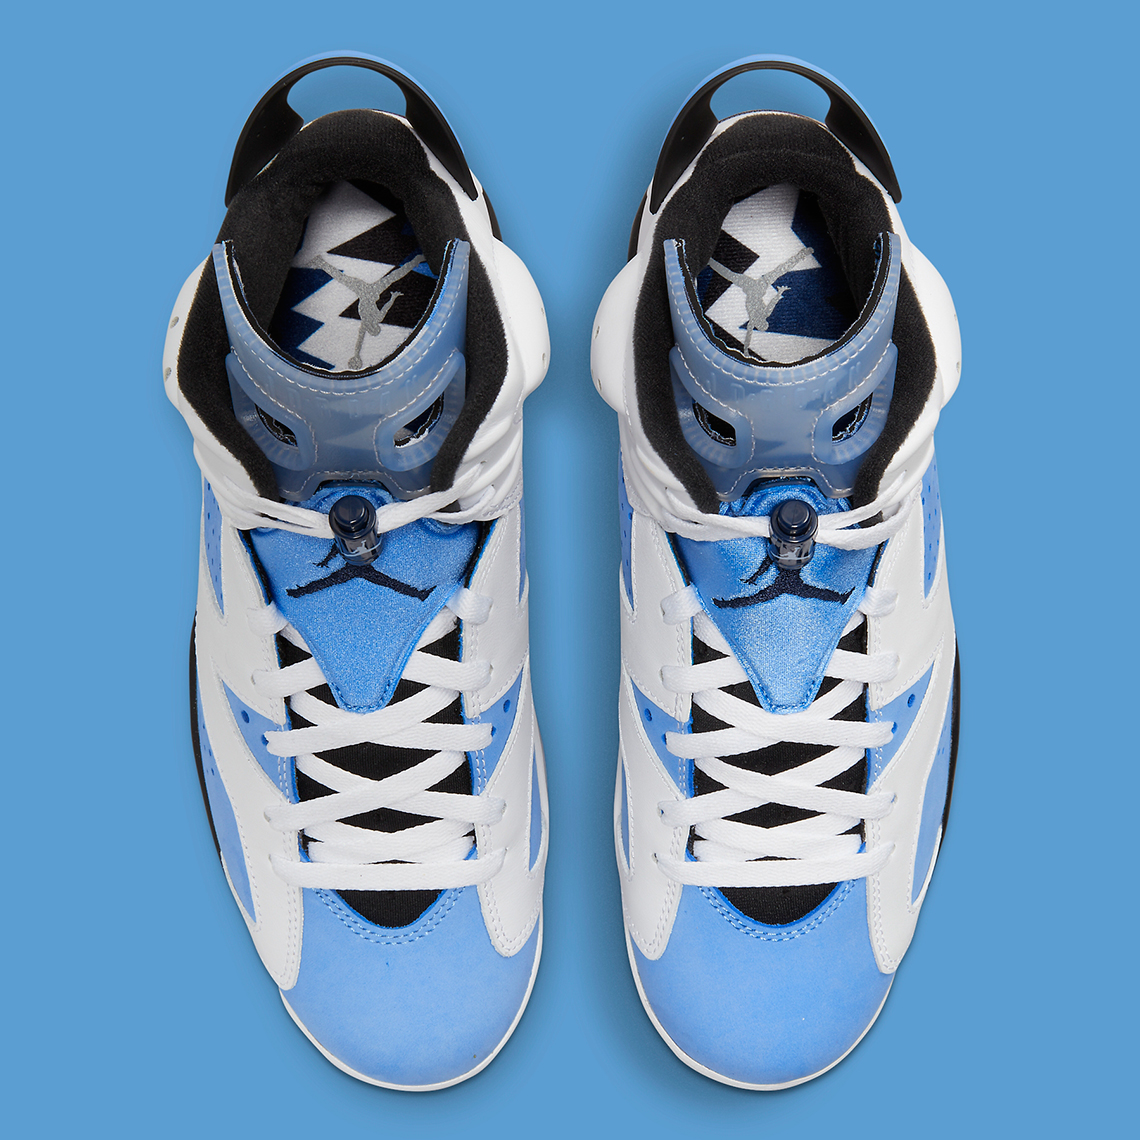 Nike Siap Rilis Air Jordan 6 ‘University Blue’, Ada Warna Ikonik!